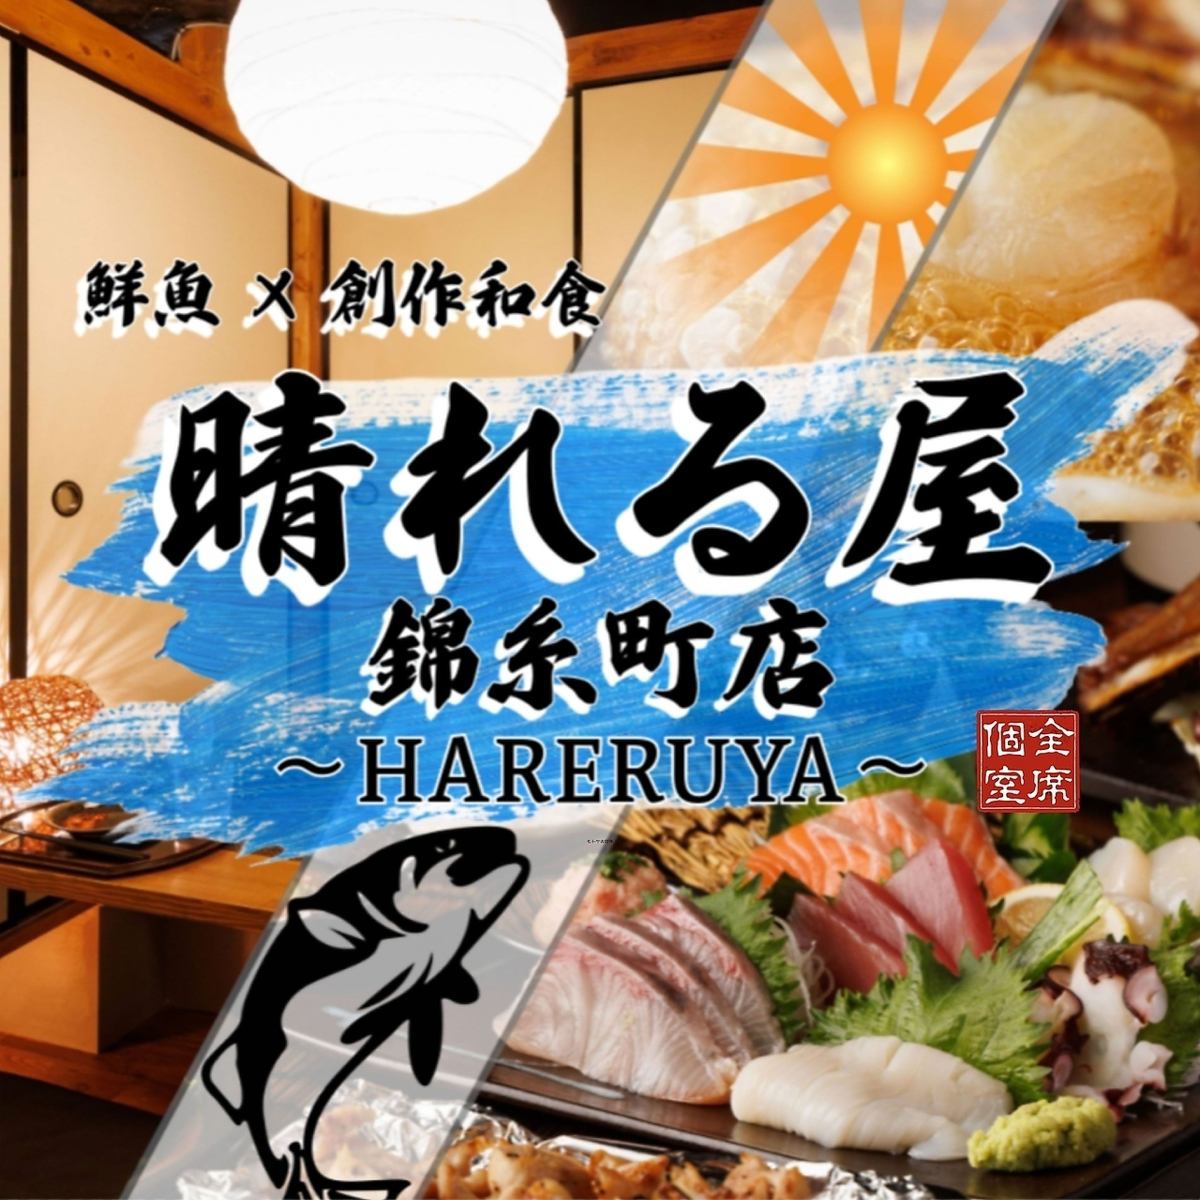 從錦糸町站步行3分鐘！無限暢飲套餐3,280日元起！新鮮的魚和特色菜餚直送×全包房座位